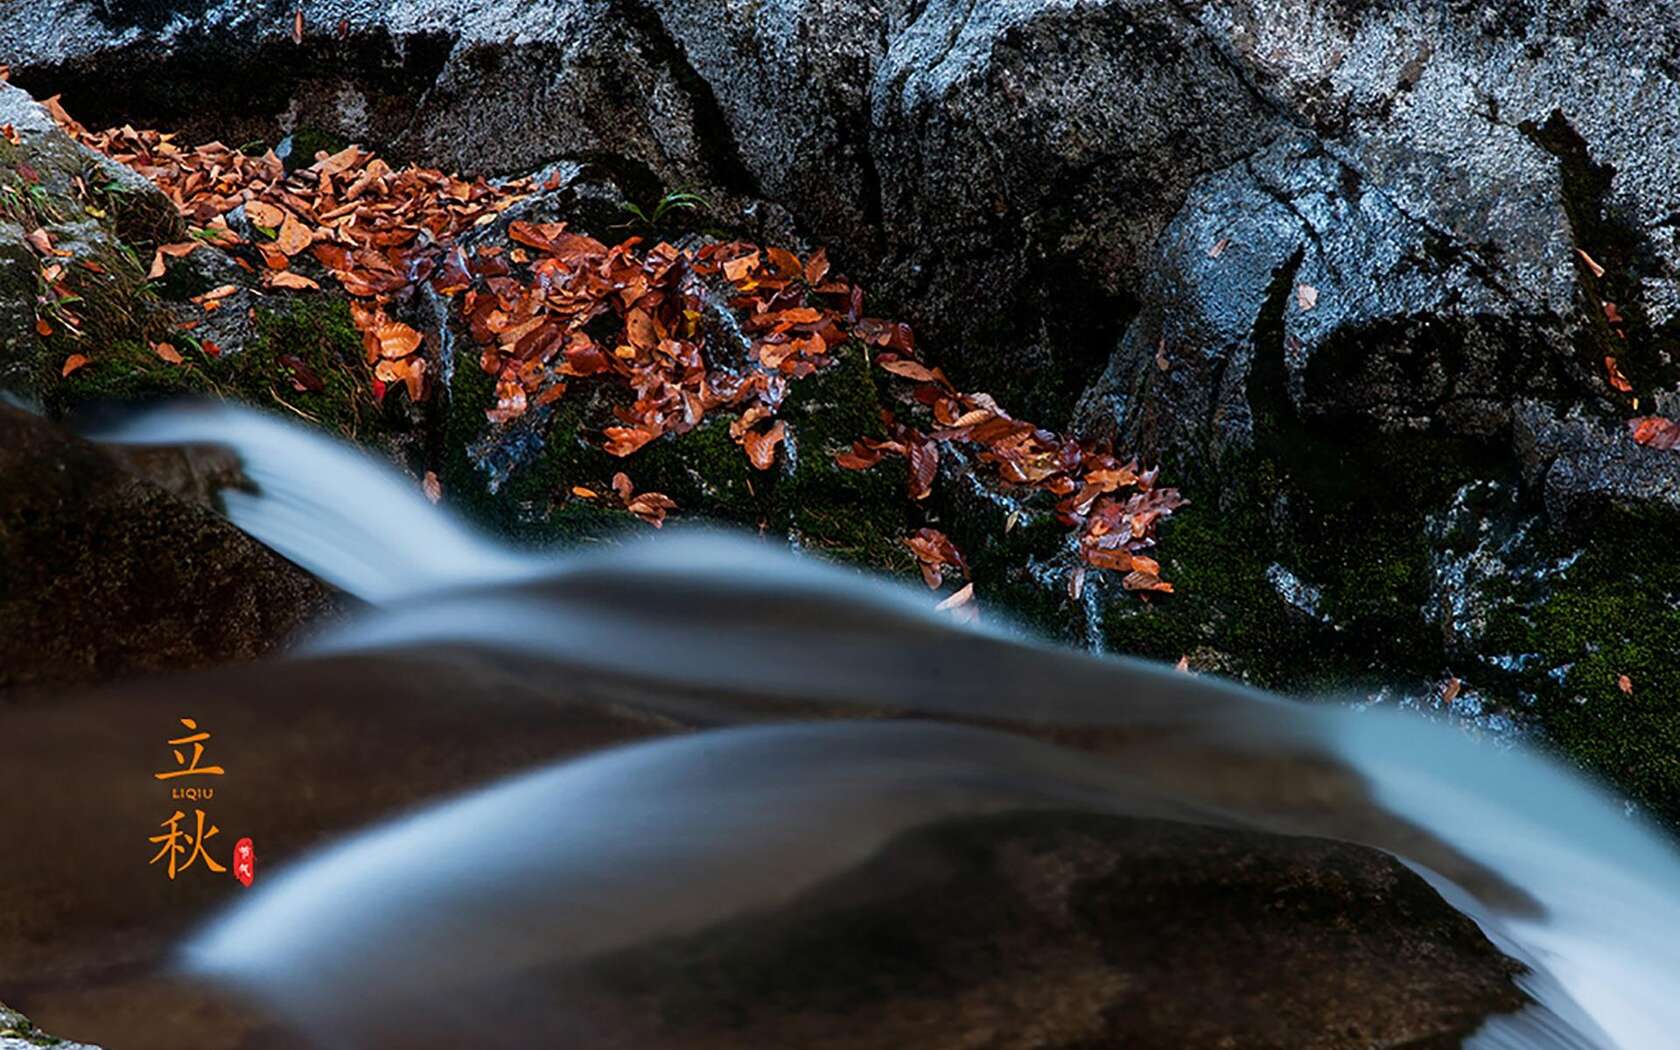 落叶知秋，立秋壁纸，以山间溪水，石头，落叶为背景的立秋文字壁纸图片套图1